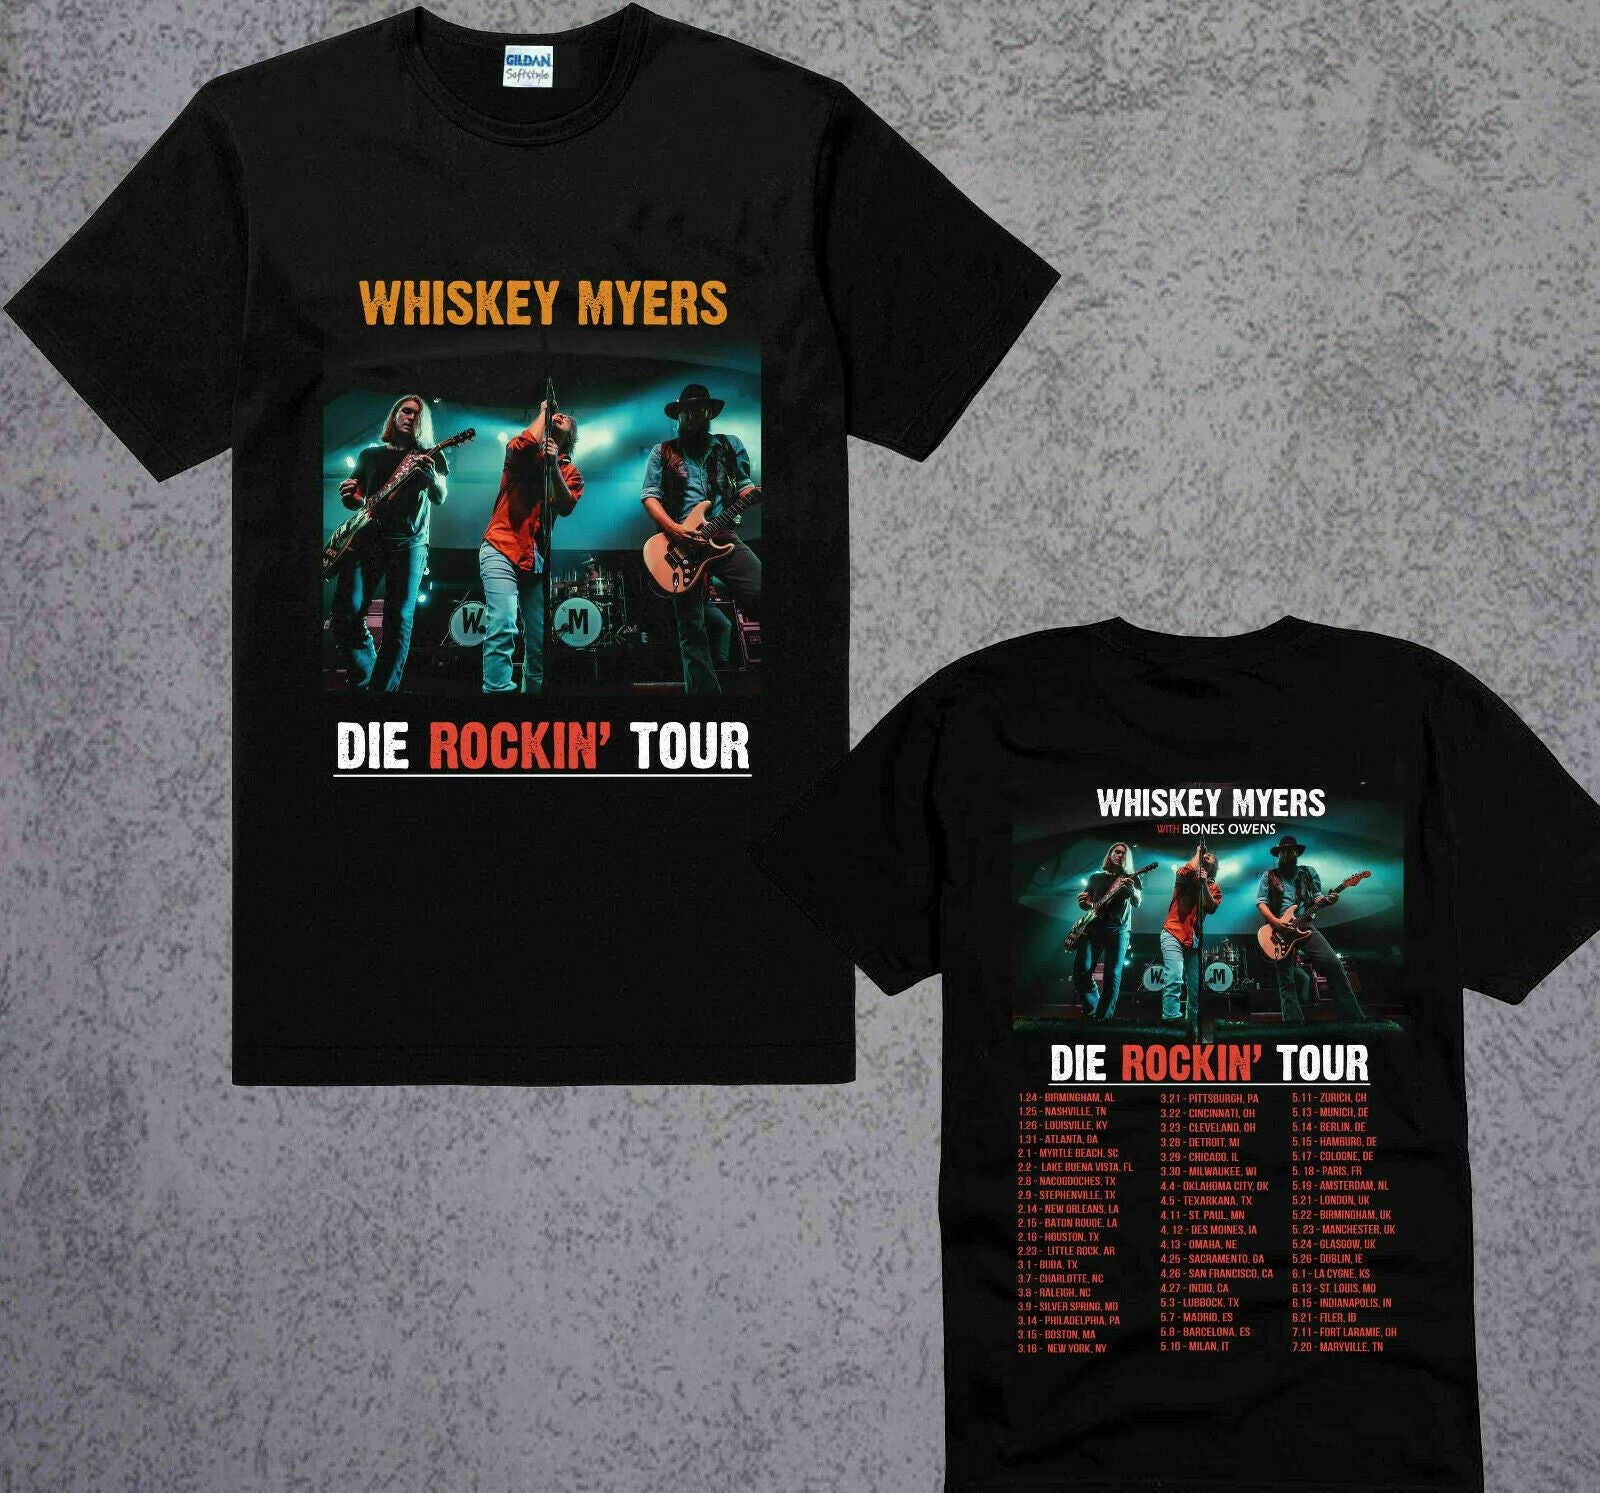 whiskey myers tour dates 2014